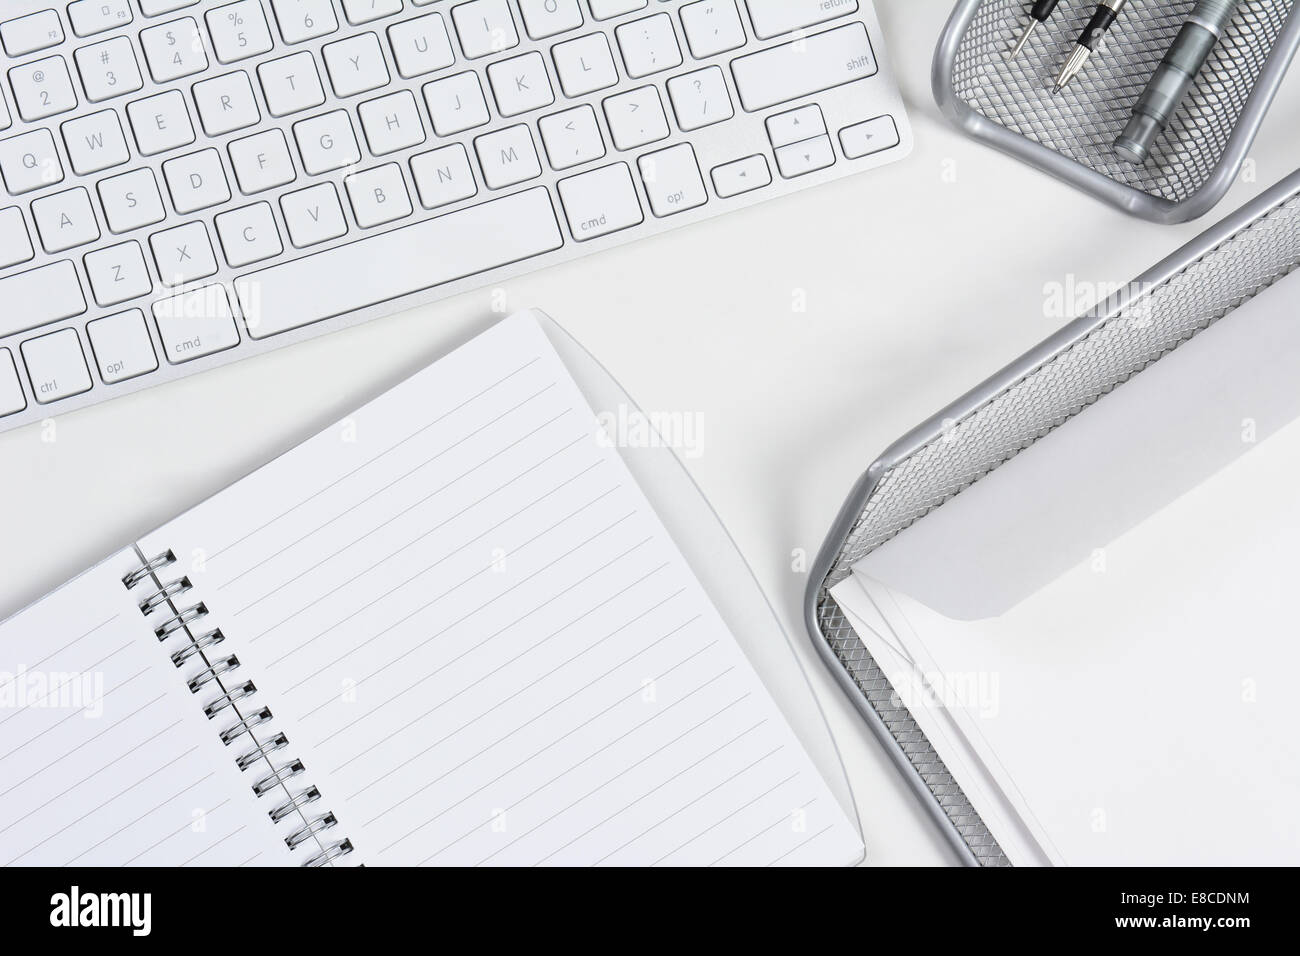 Hohen Winkel Schuss aus einem weißen Schreibtisch mit vorwiegend weißer und silberner Office-Objekte. Elemente enthalten, Tastatur, Pad, Stifte, Kompass, und Stockfoto